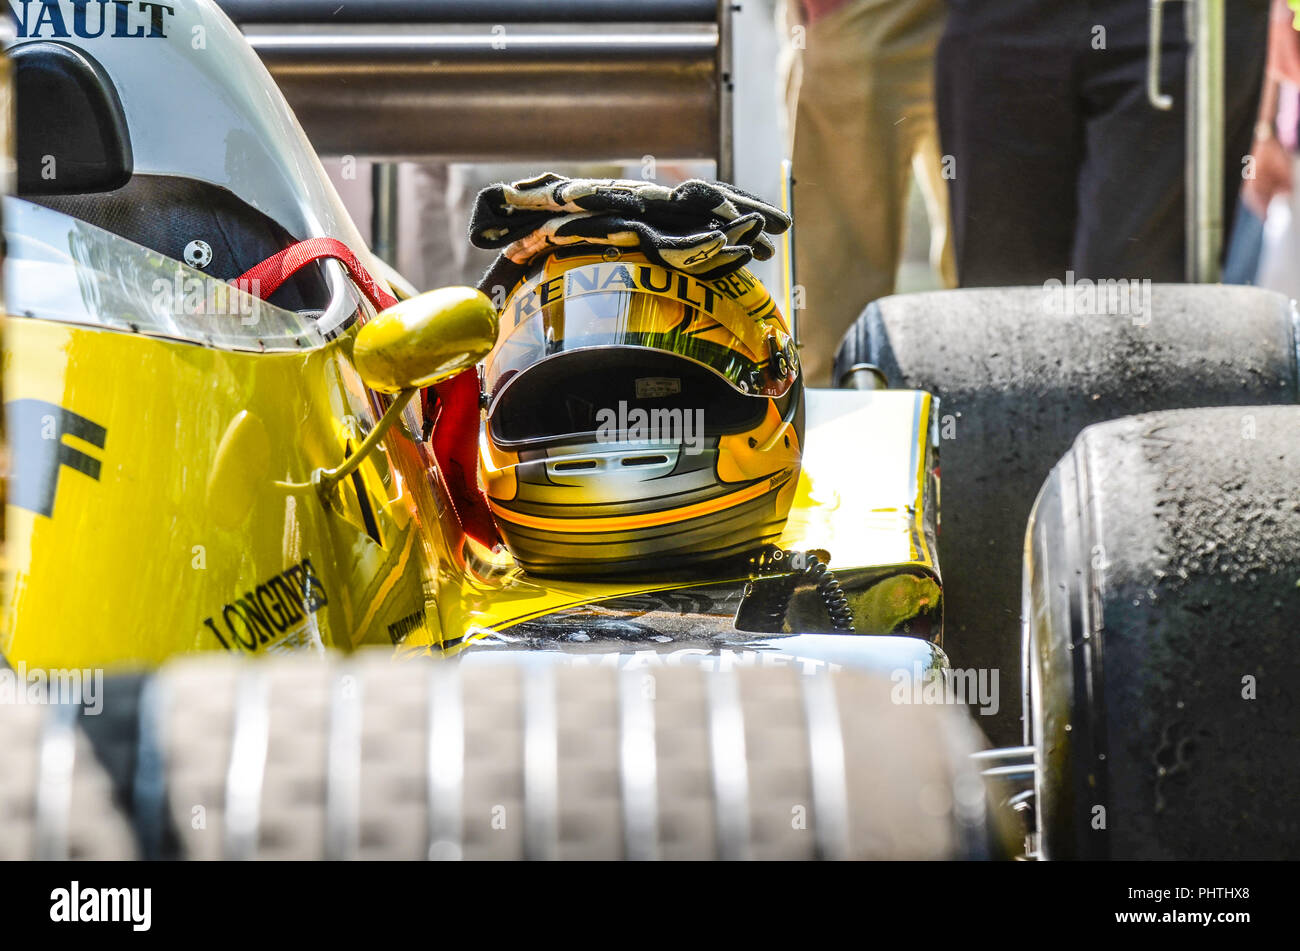 Alain Prost Classic Renault RE40 Formel-1-Grand-prix-Rennwagen beim Goodwood Festival of Speed. Helm und Handschuhe bereit Stockfoto